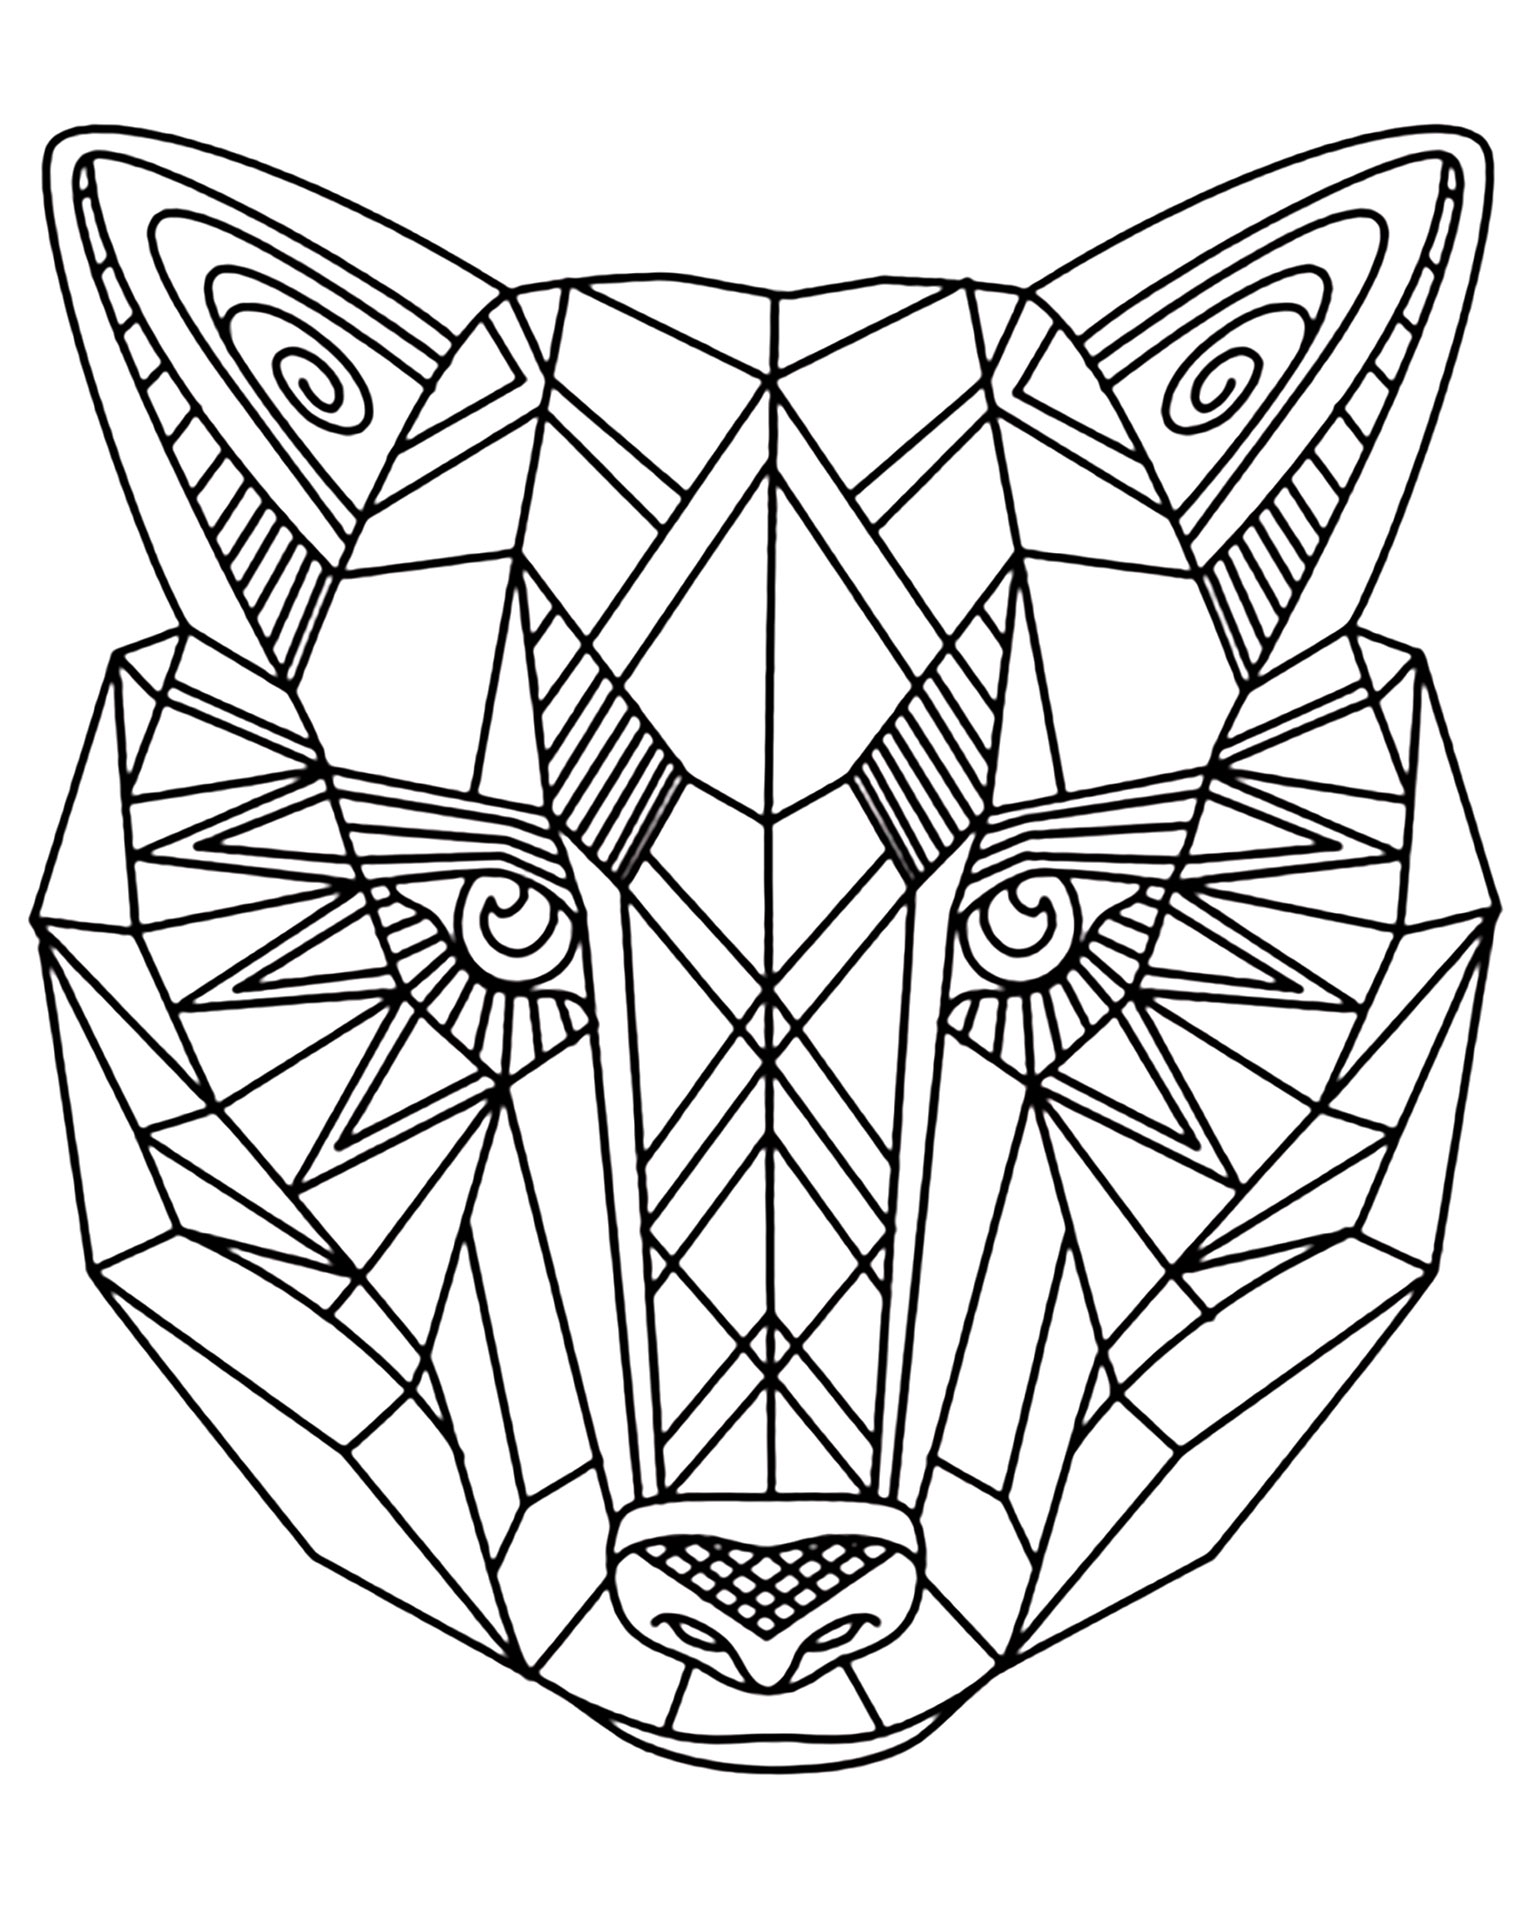 Simple Dibujos para colorear gratis de Lobo